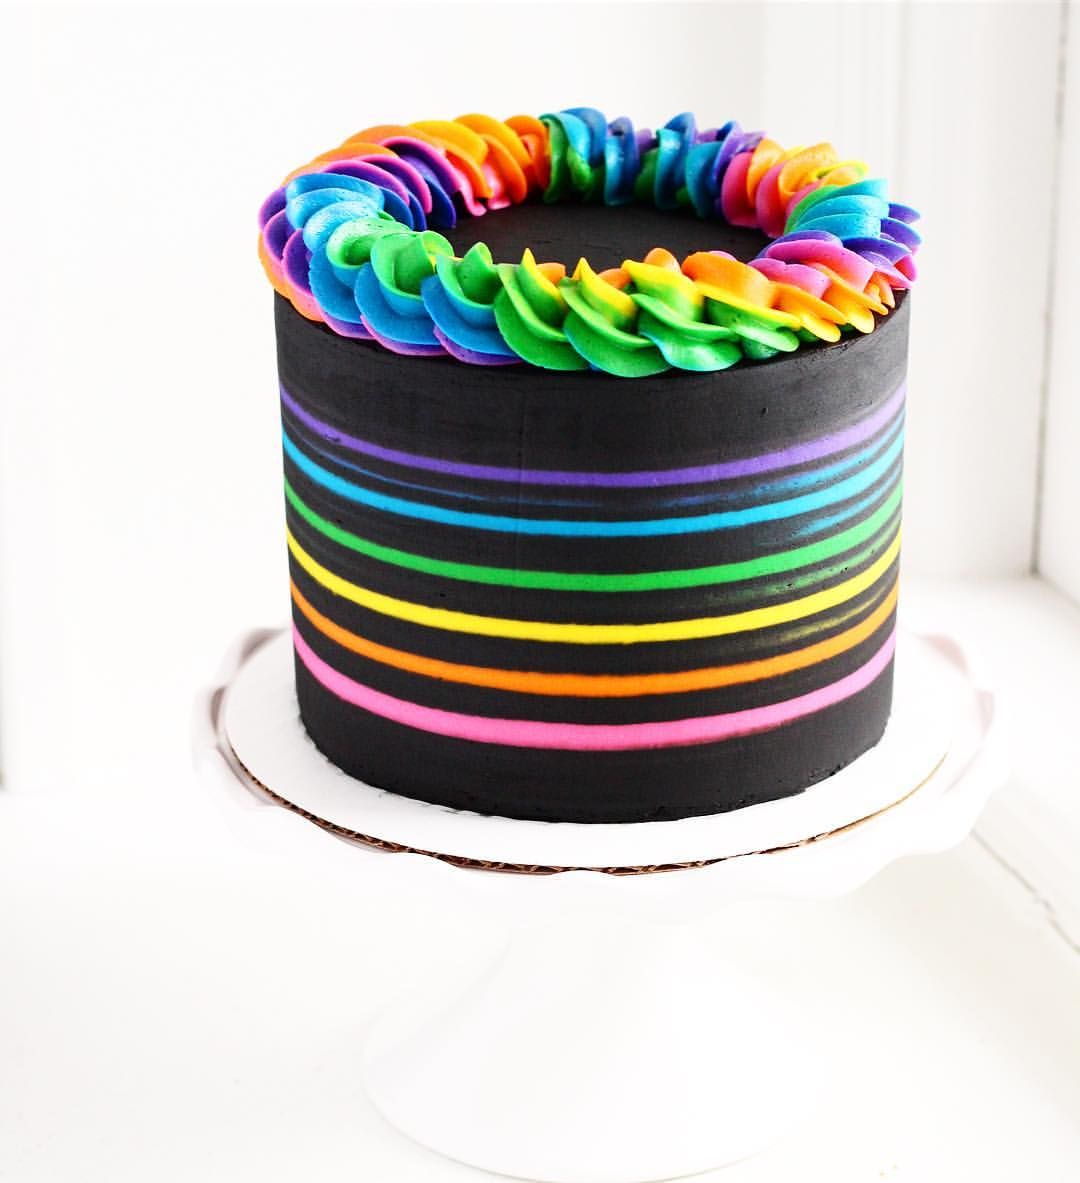 rainbow cake ideas for birthday